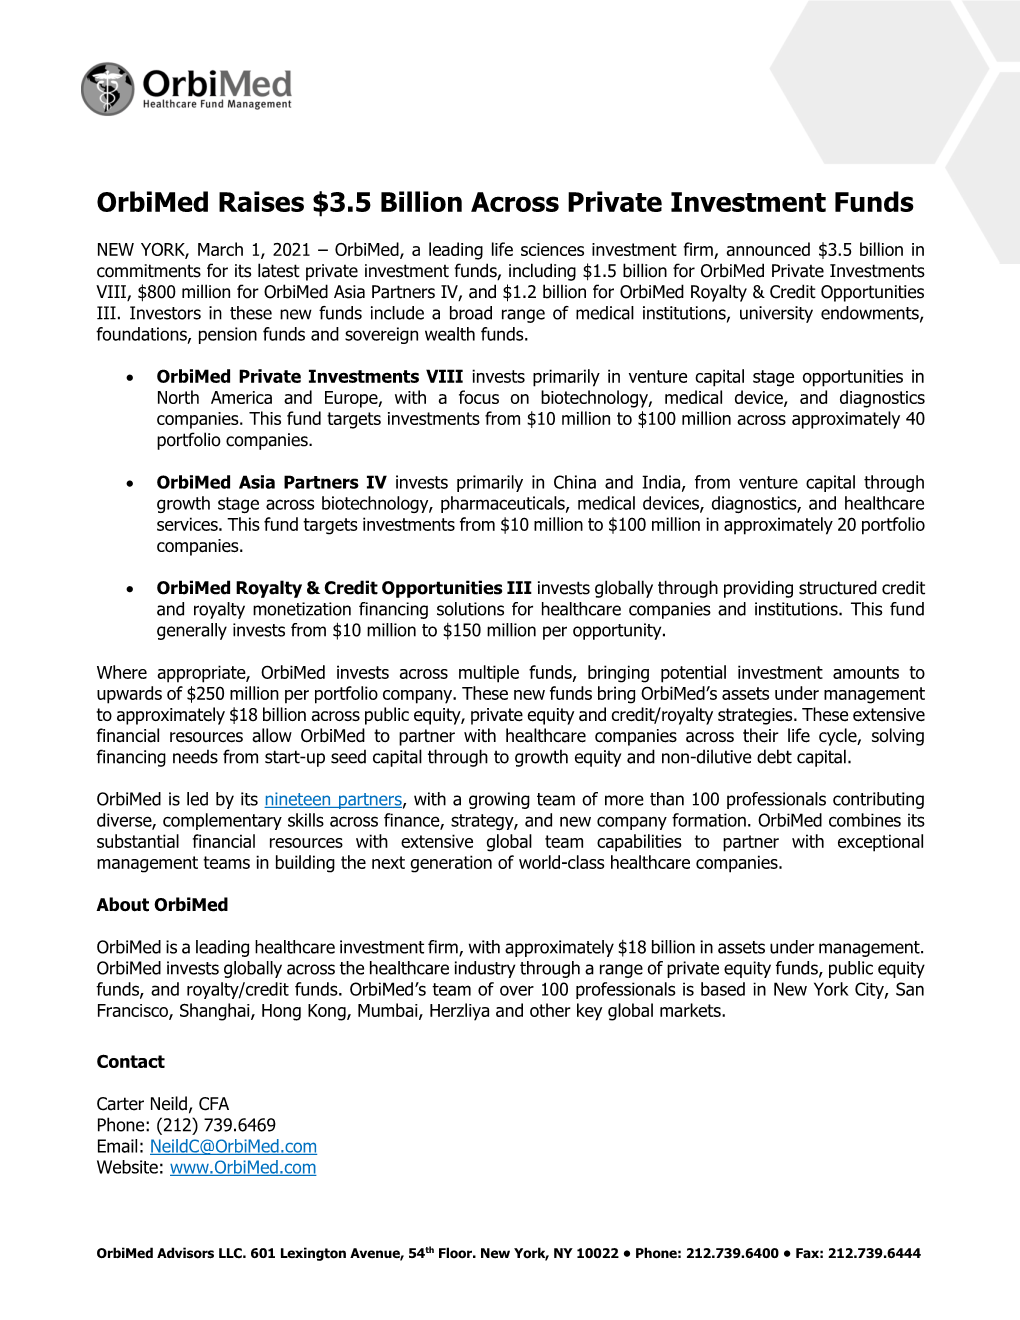 Mar 1, 2021 Orbimed Raises $3.5 Billion Across Private Investment